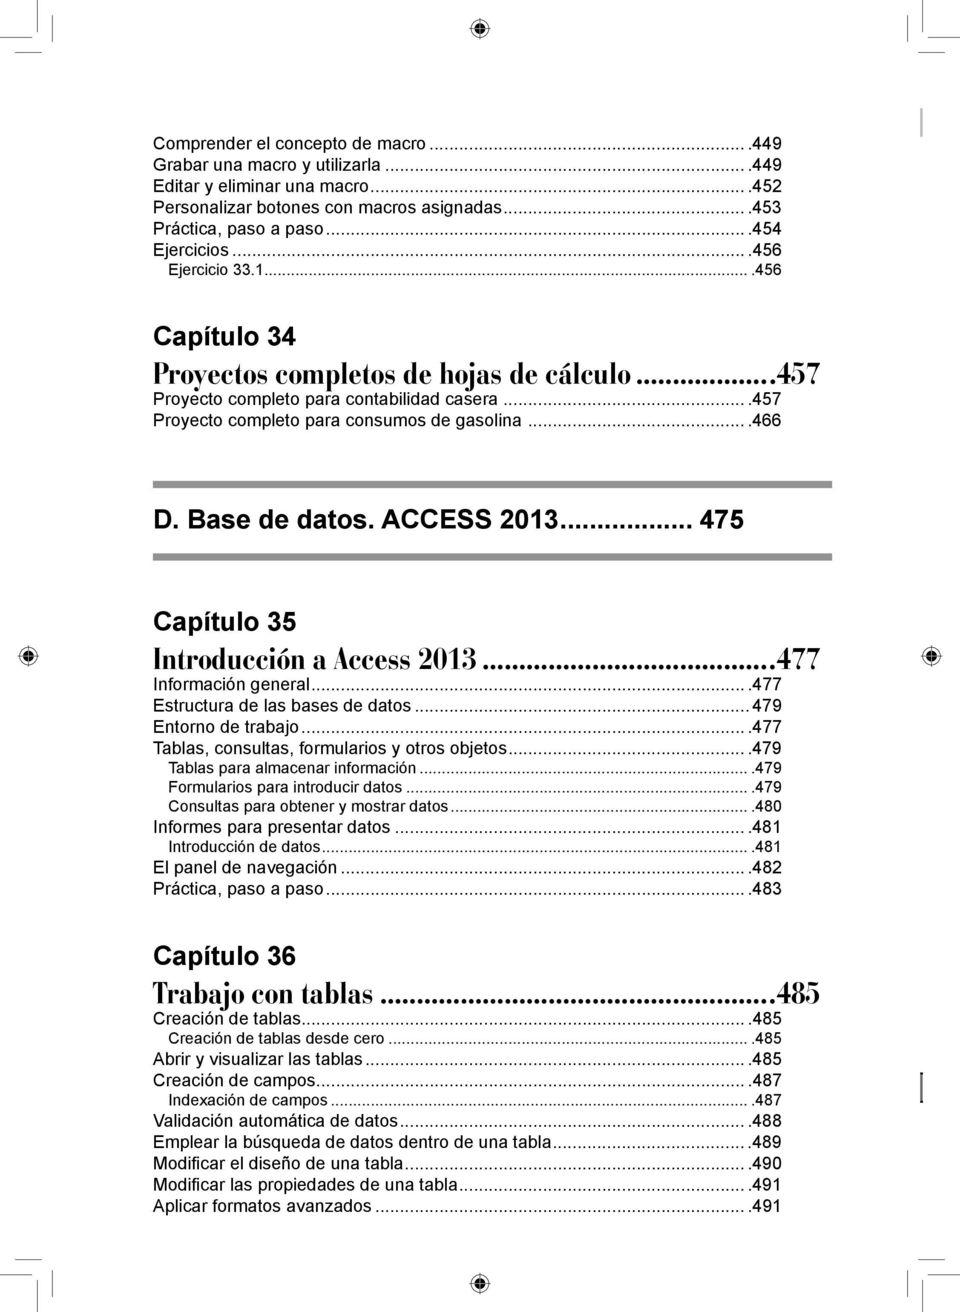 Base de datos. ACCESS 2013... 475 Capítulo 35 Introducción a Access 2013...477 Información general....477 Estructura de las bases de datos... 479 Entorno de trabajo.